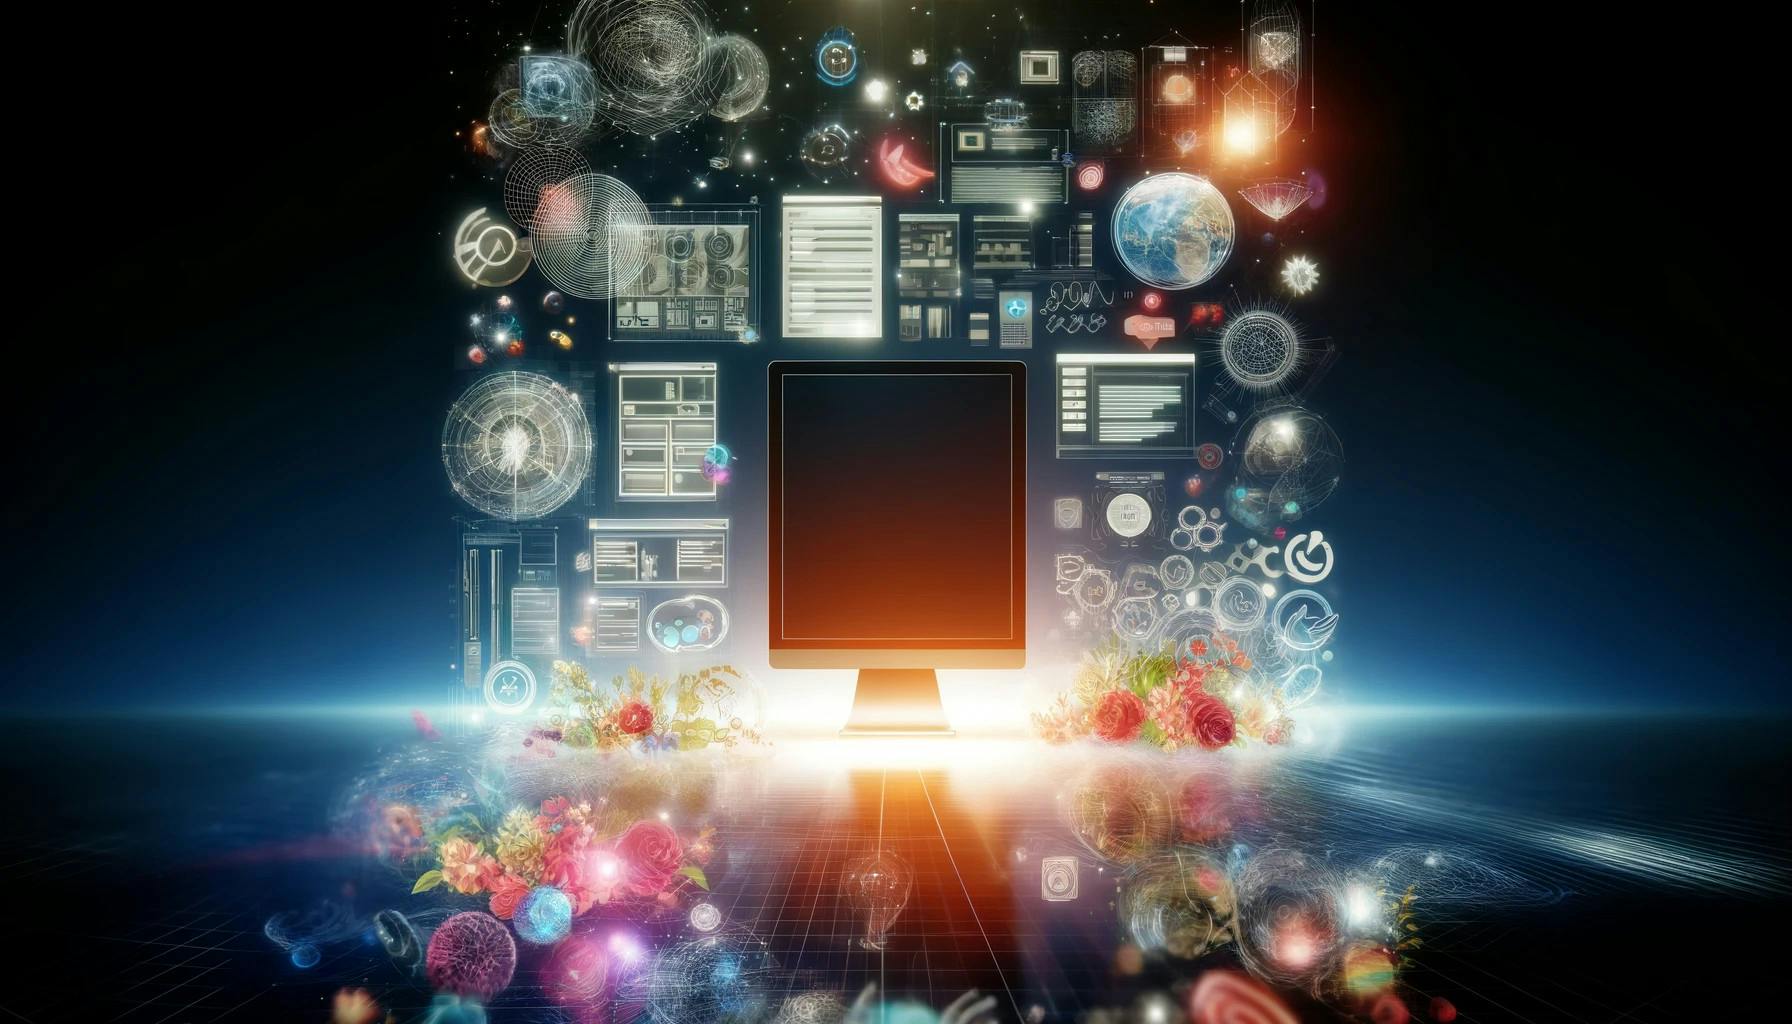 Espaço digital abstrato com wireframes, paletas de cores e ícones de UI ao redor de uma tela central iluminada, representando a fusão de design e tecnologia no desenvolvimento web.